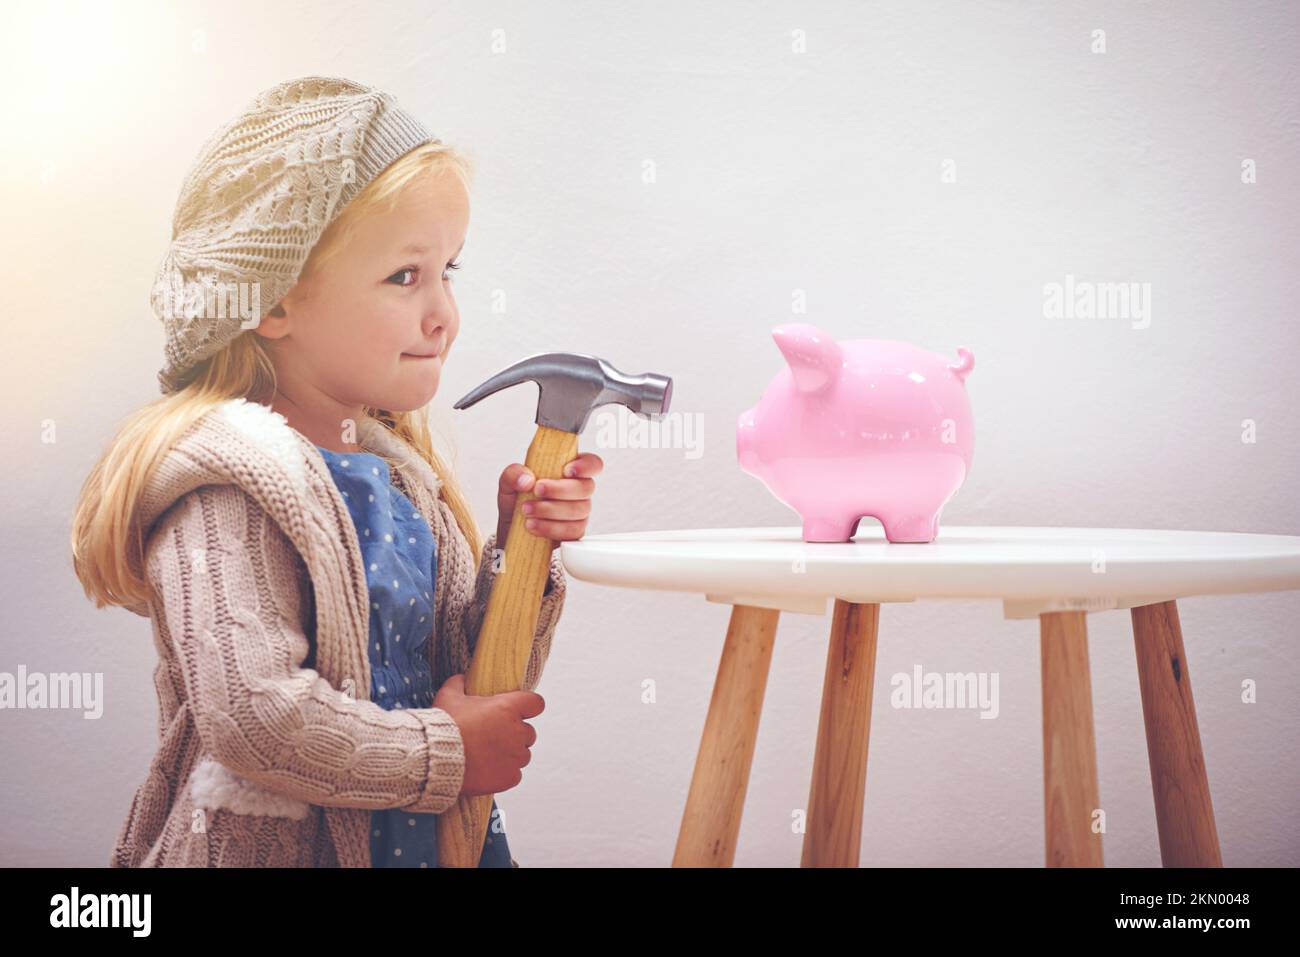 Verlockend, nicht wahr? Ein kleines Mädchen, das mit einem Hammer neben ihrem Sparschwein steht. Stockfoto